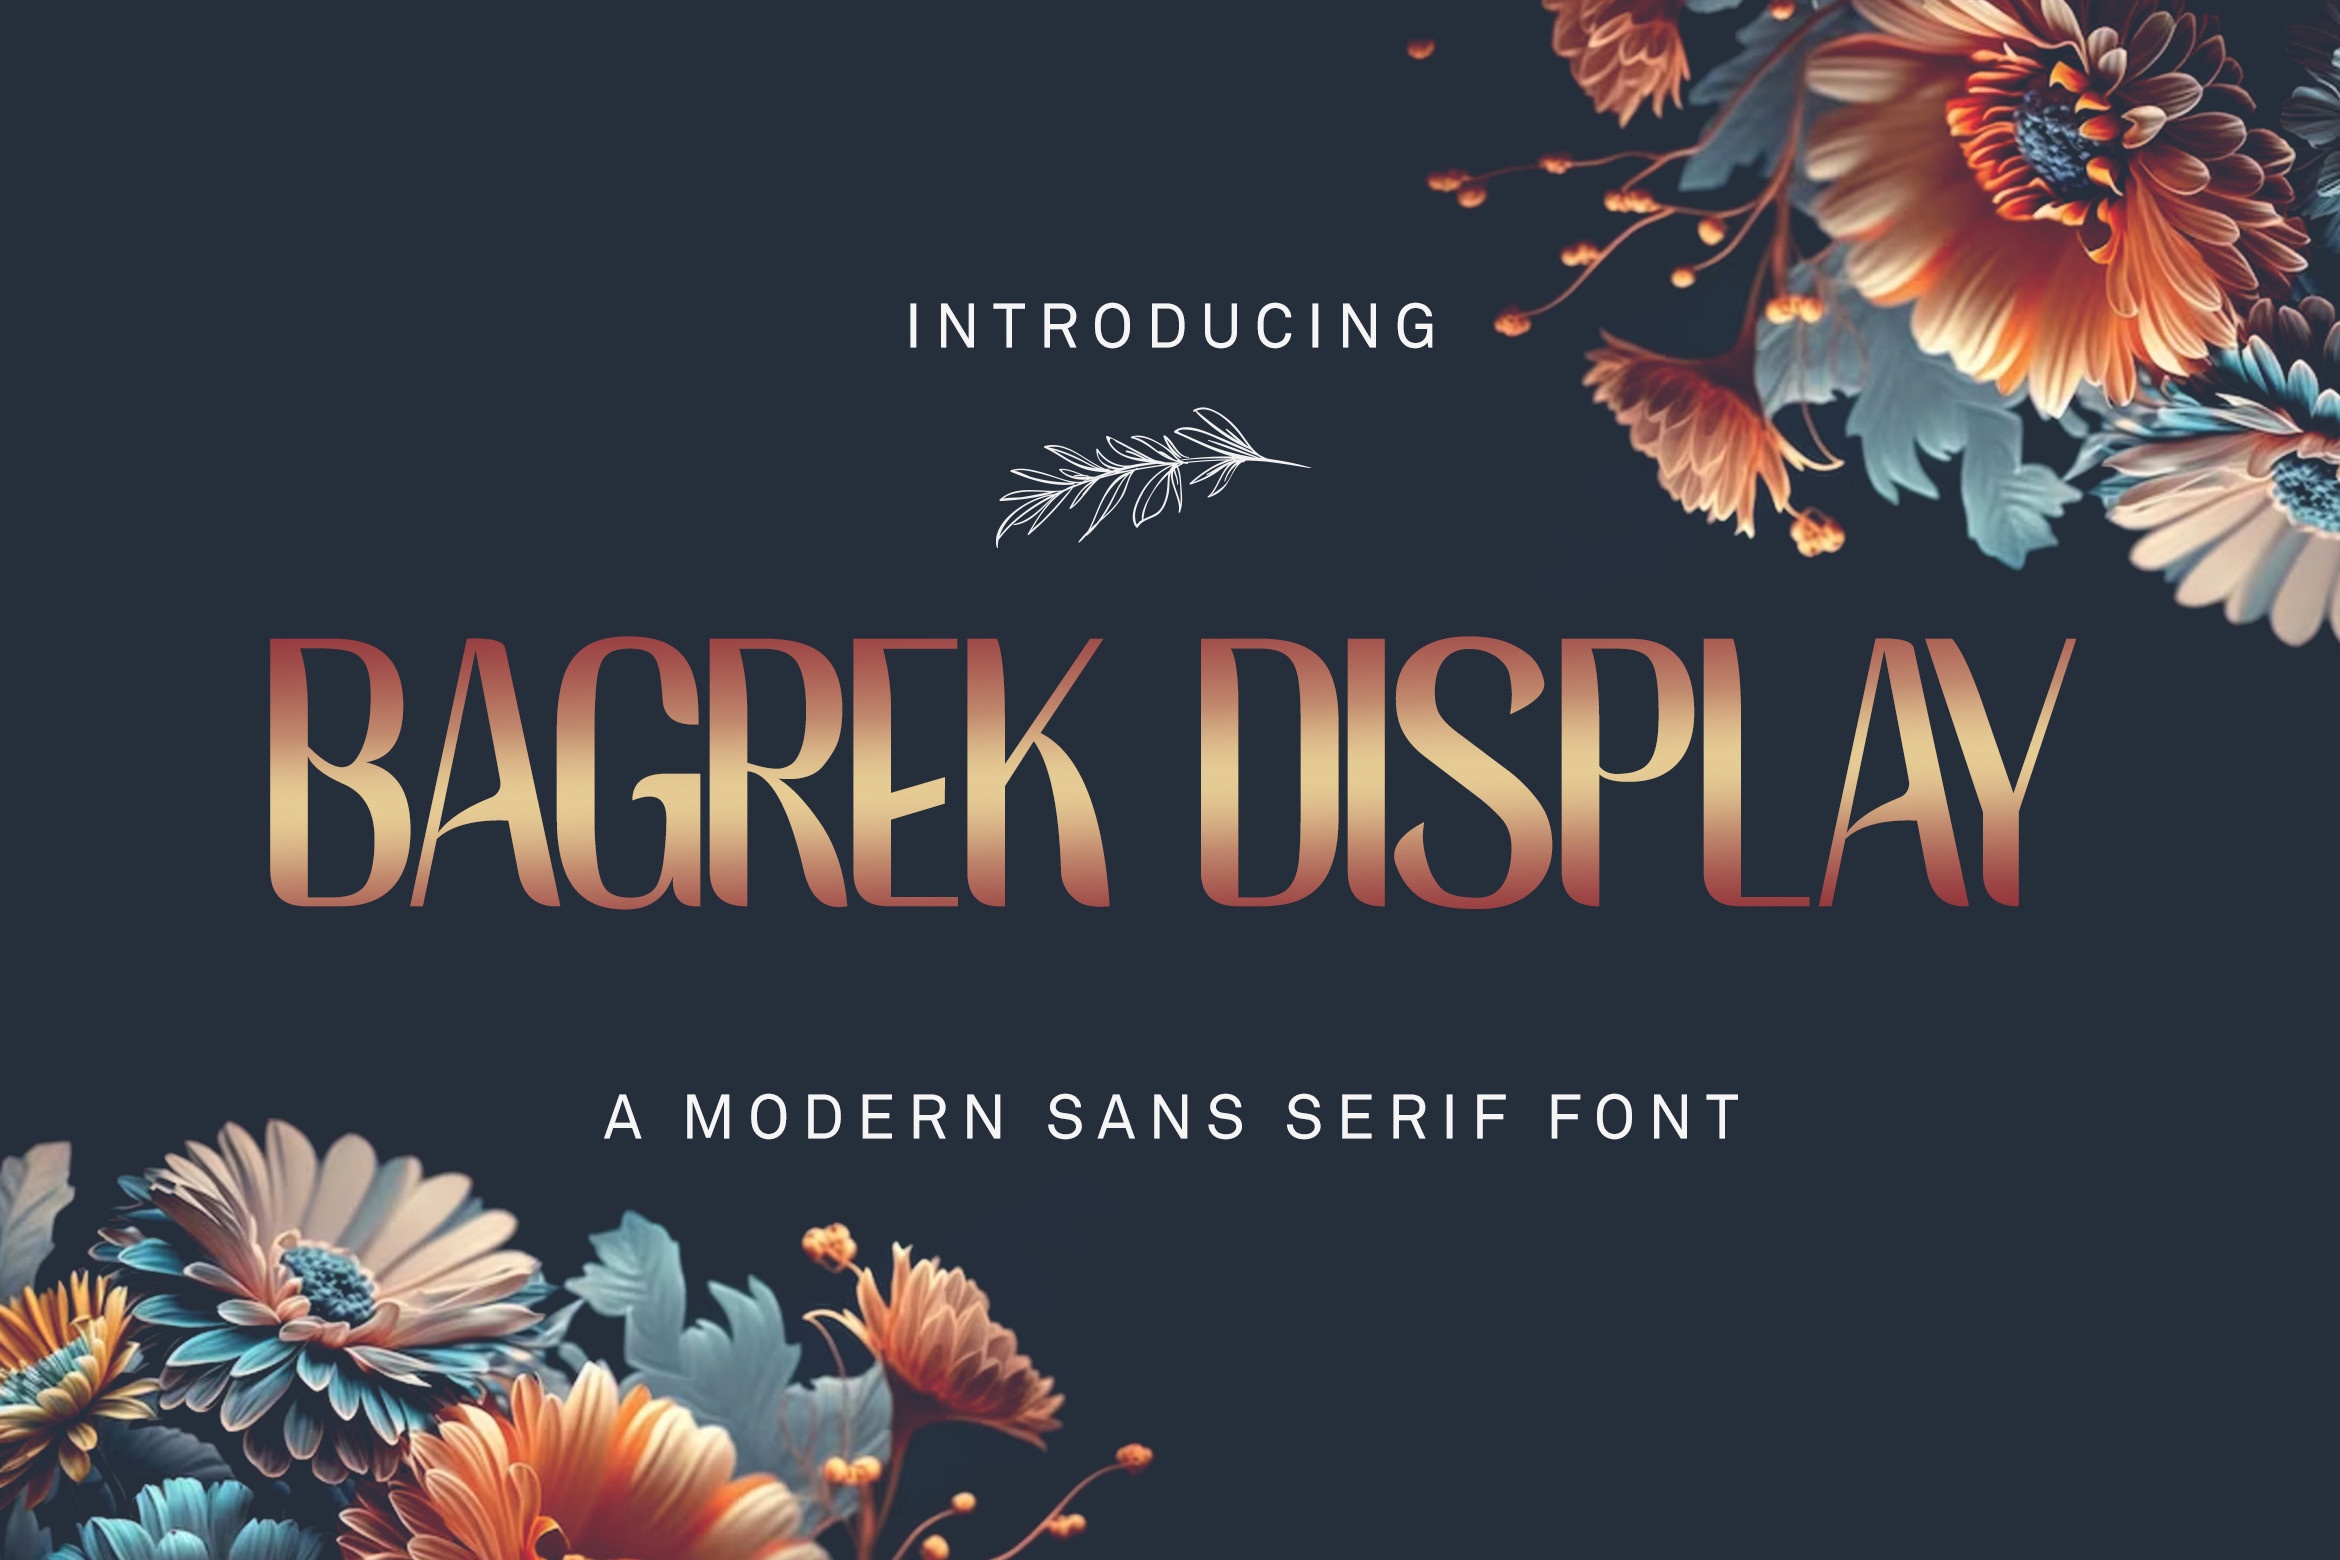 Bagrek Display Font